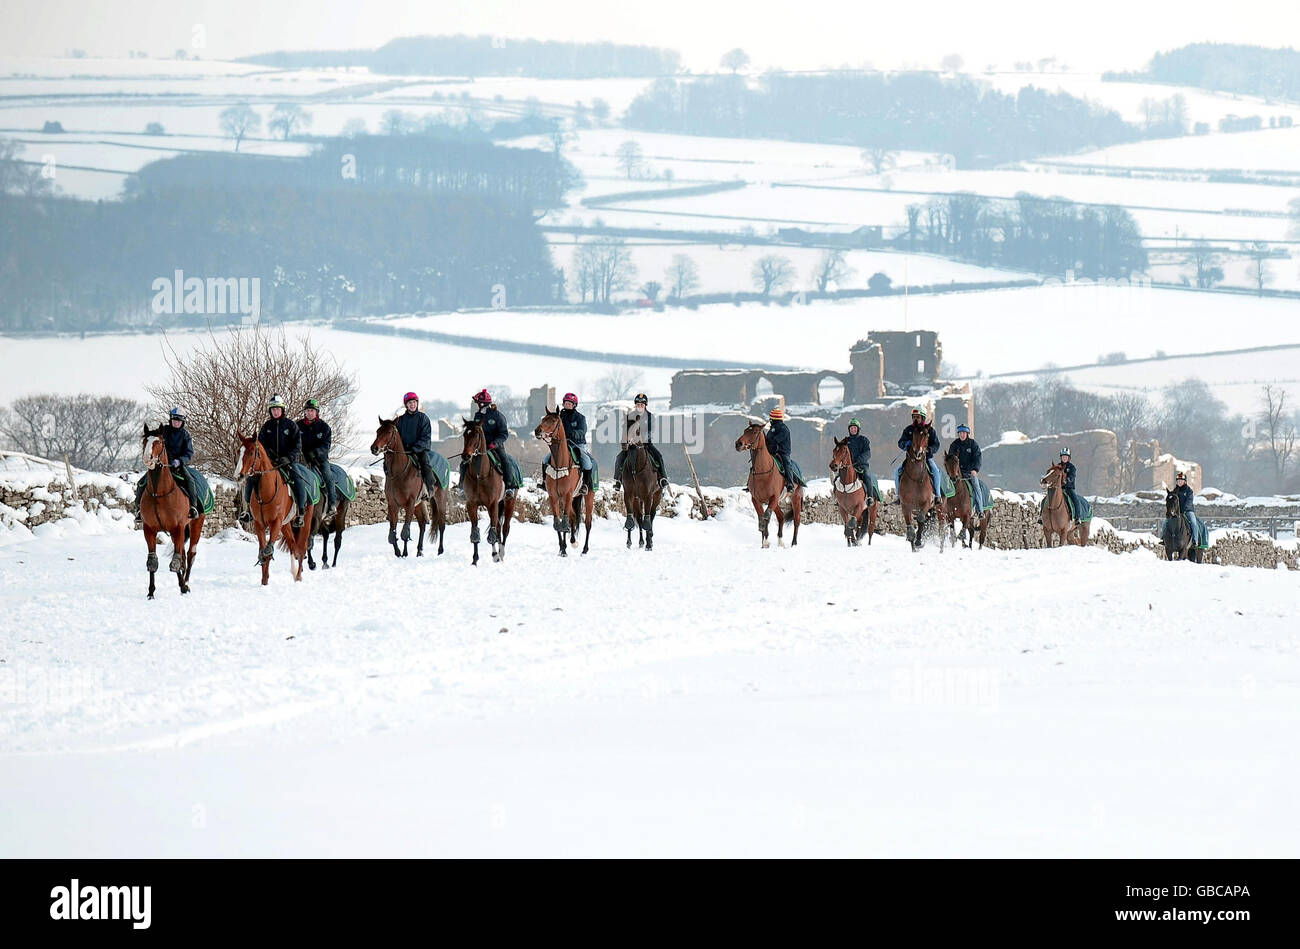 Con le corse di tappeti erbosi abbandonate di nuovo nel Regno Unito a causa delle forti nevicate, i galoppini a Middleham nel North Yorkshire erano occupati con cavalli da corsa che si esercitavano nella neve profonda. Foto Stock